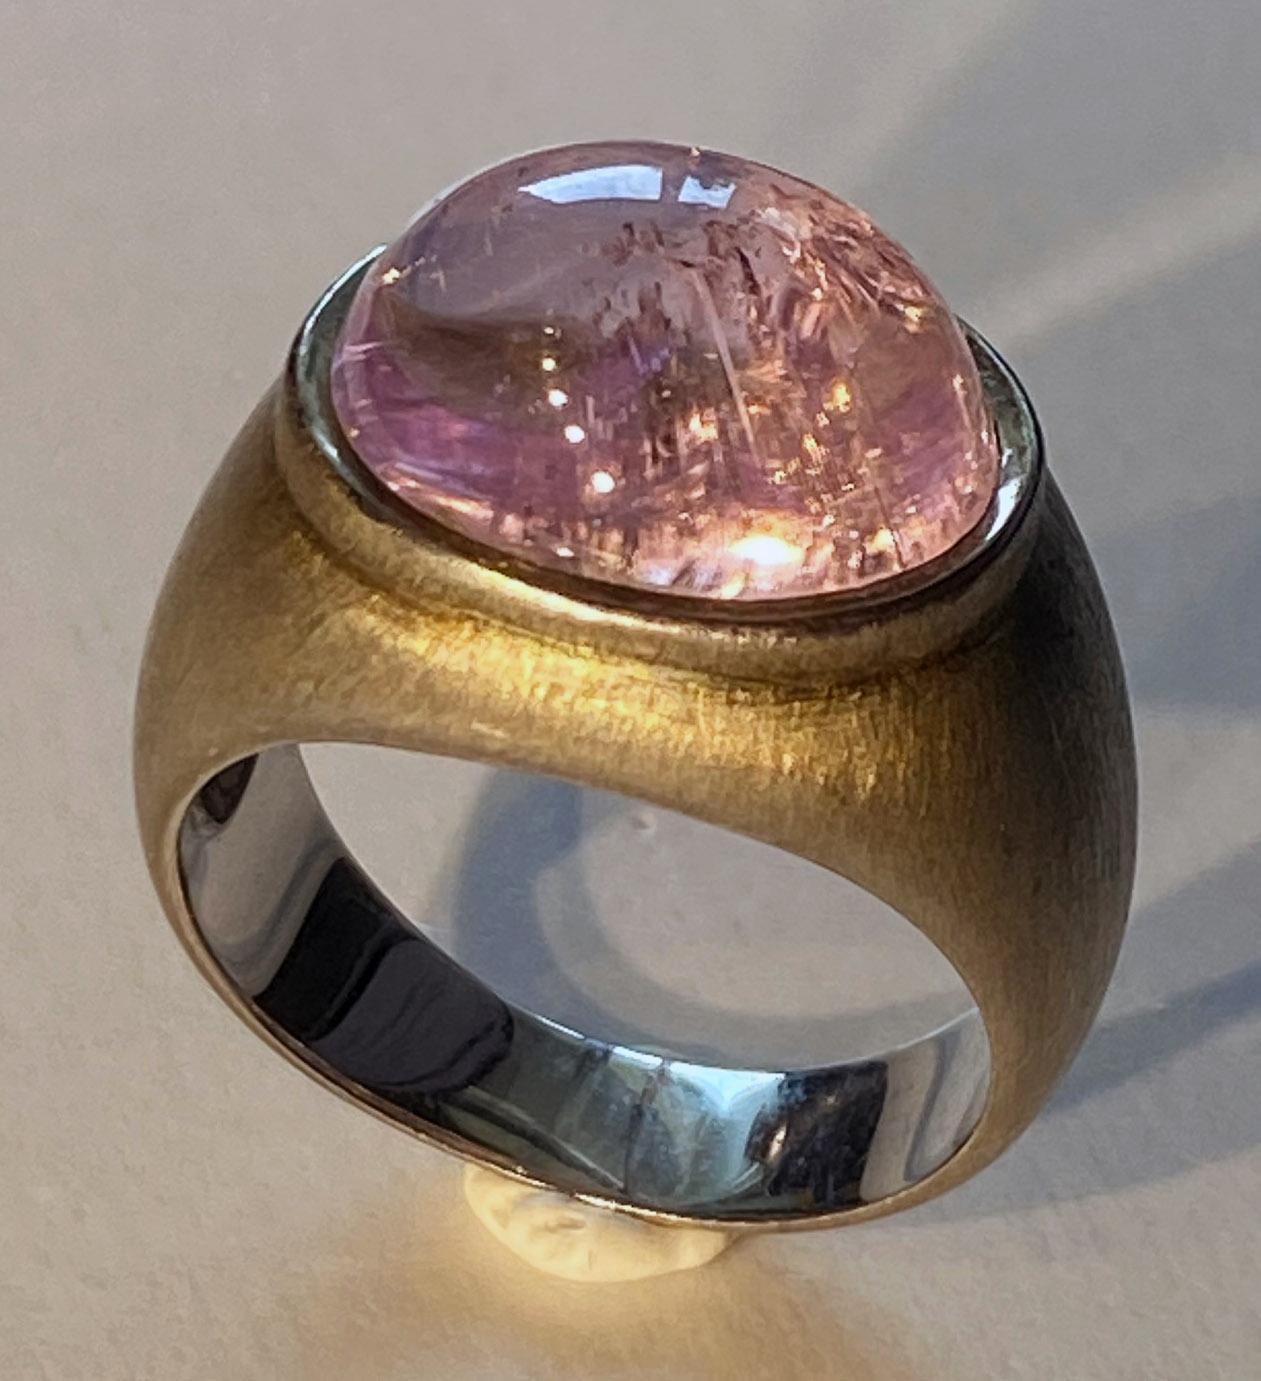 Ein gebürstetes Silber Dome Ring mit einem 7,5 Karat rosa Kunzit Cabochon gesetzt. Dieser Ring aus gebürstetem Silber ist in der Größe 7,5 USA und hat eine schöne alte Patina, wo das Silber leicht oxidiert hat. Der Kunzit-Cabochon zeigt eine schöne